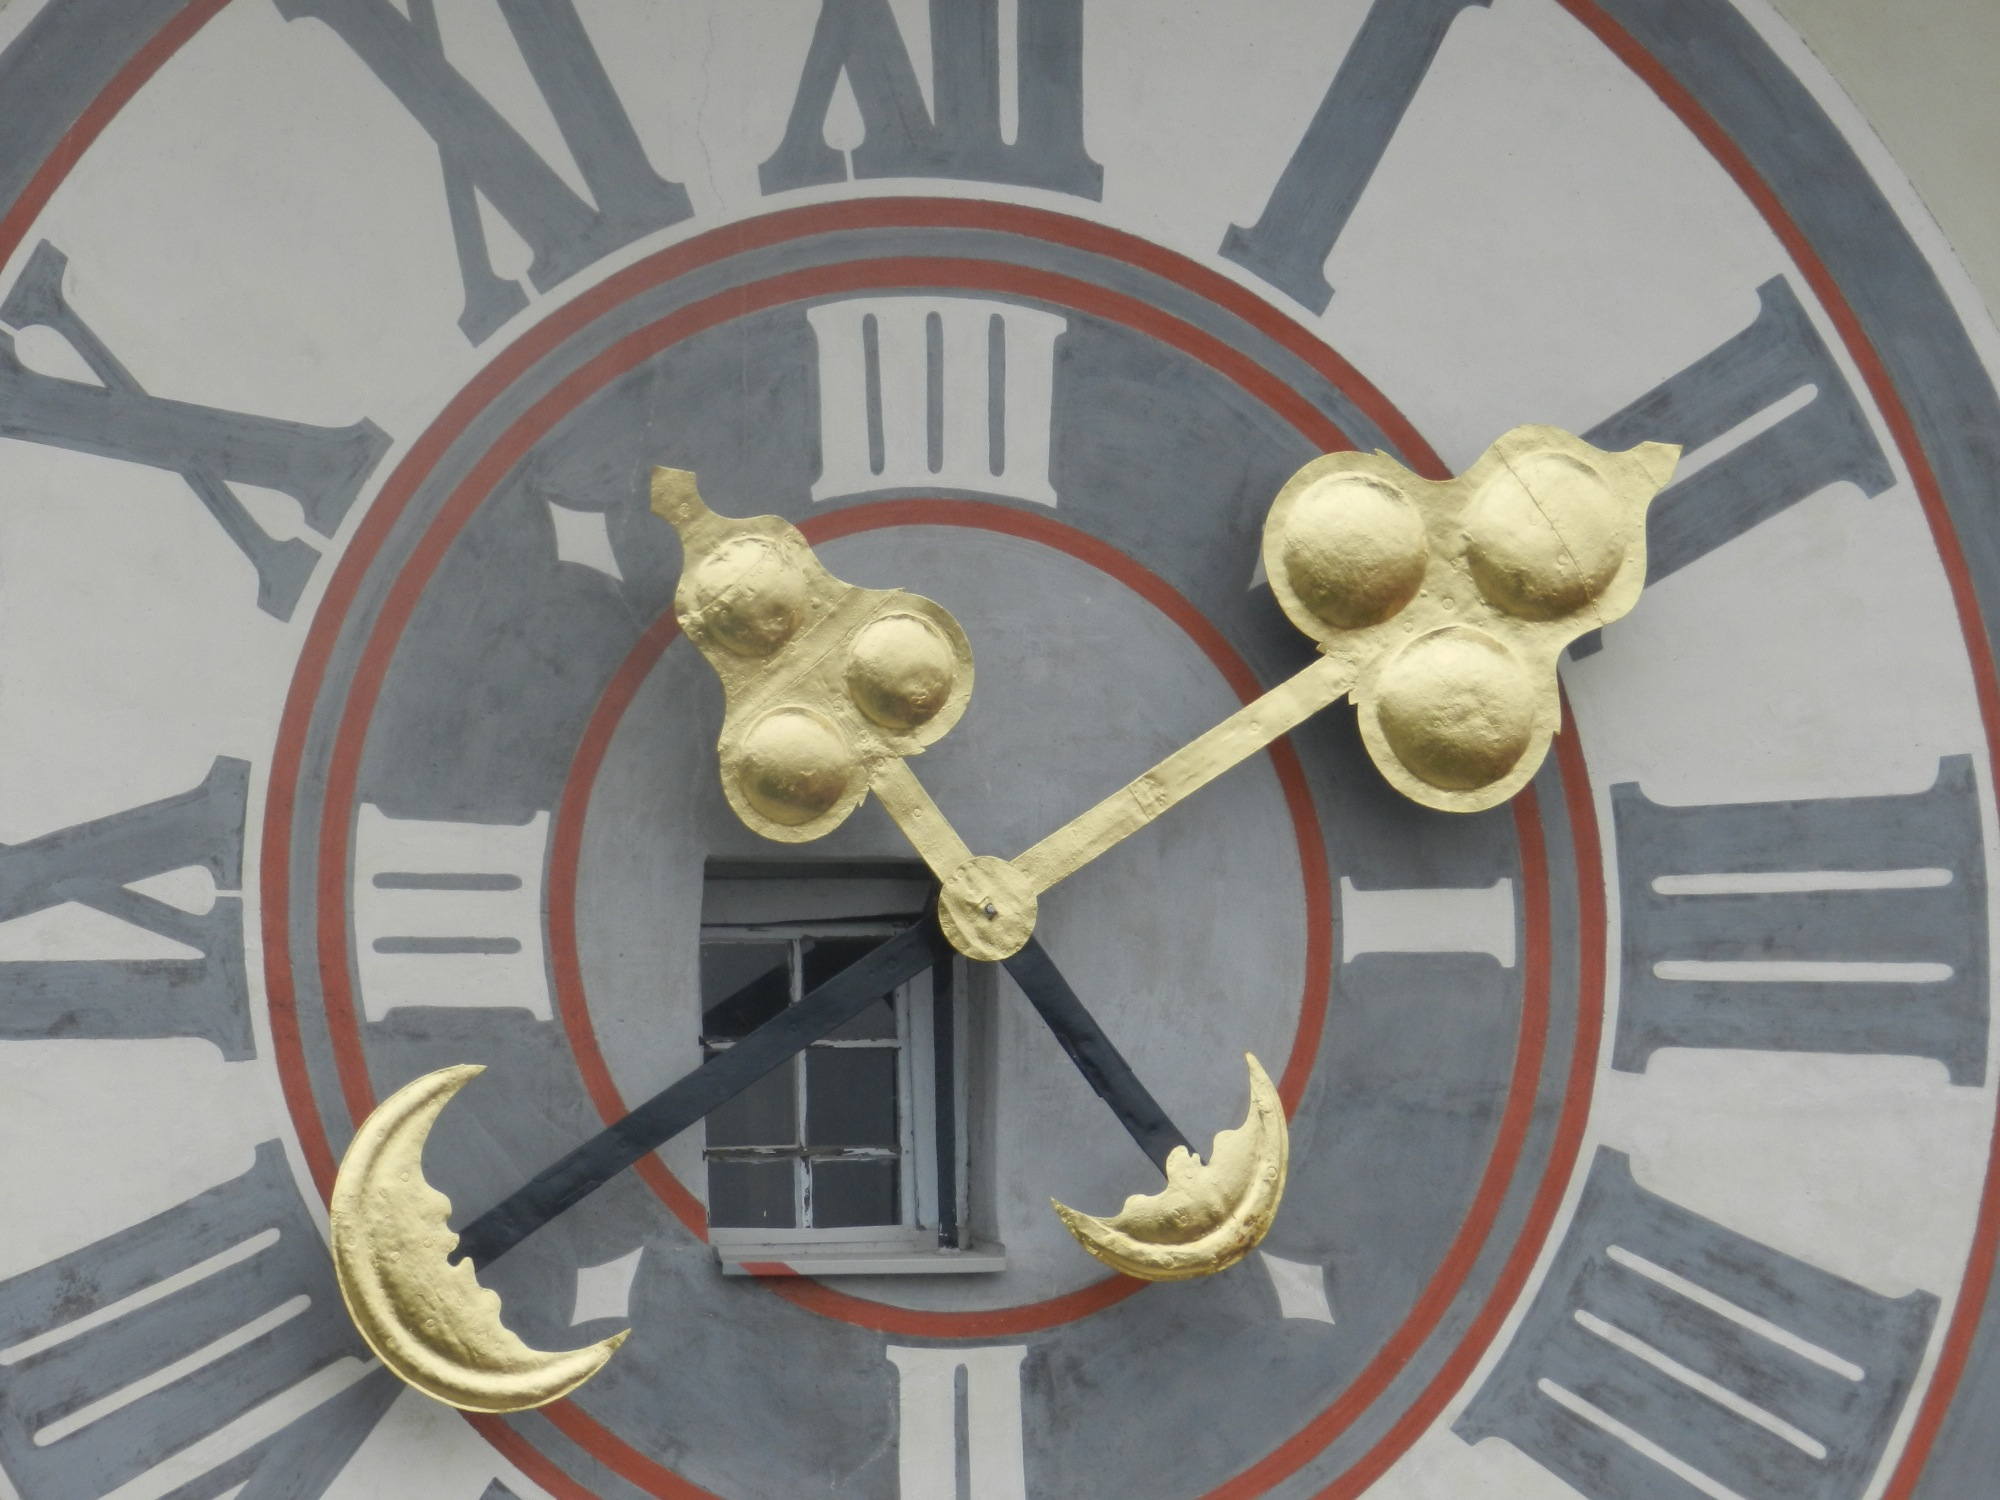 Detailaufnahme der Uhr mit Fenster dahinter am Grazer Uhrturm